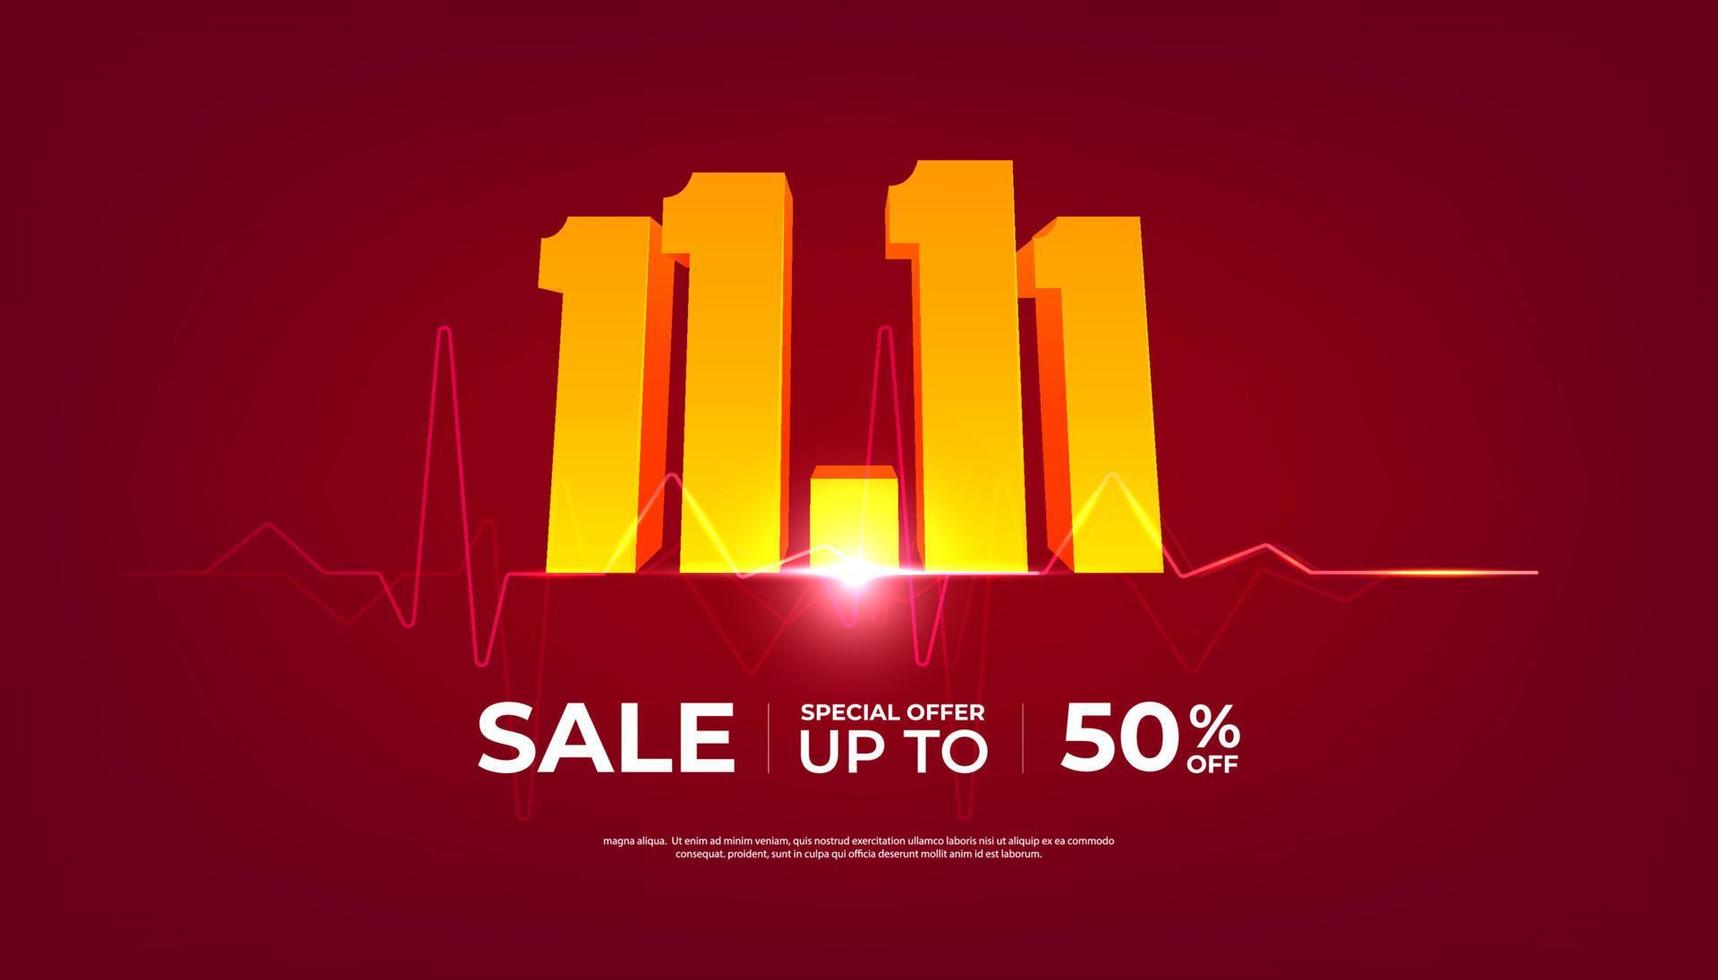 11.11 online verkoop dag komt eraan spandoek. rood achtergrond speciaal aanbiedingen en Promotie sjabloon ontwerp. vector